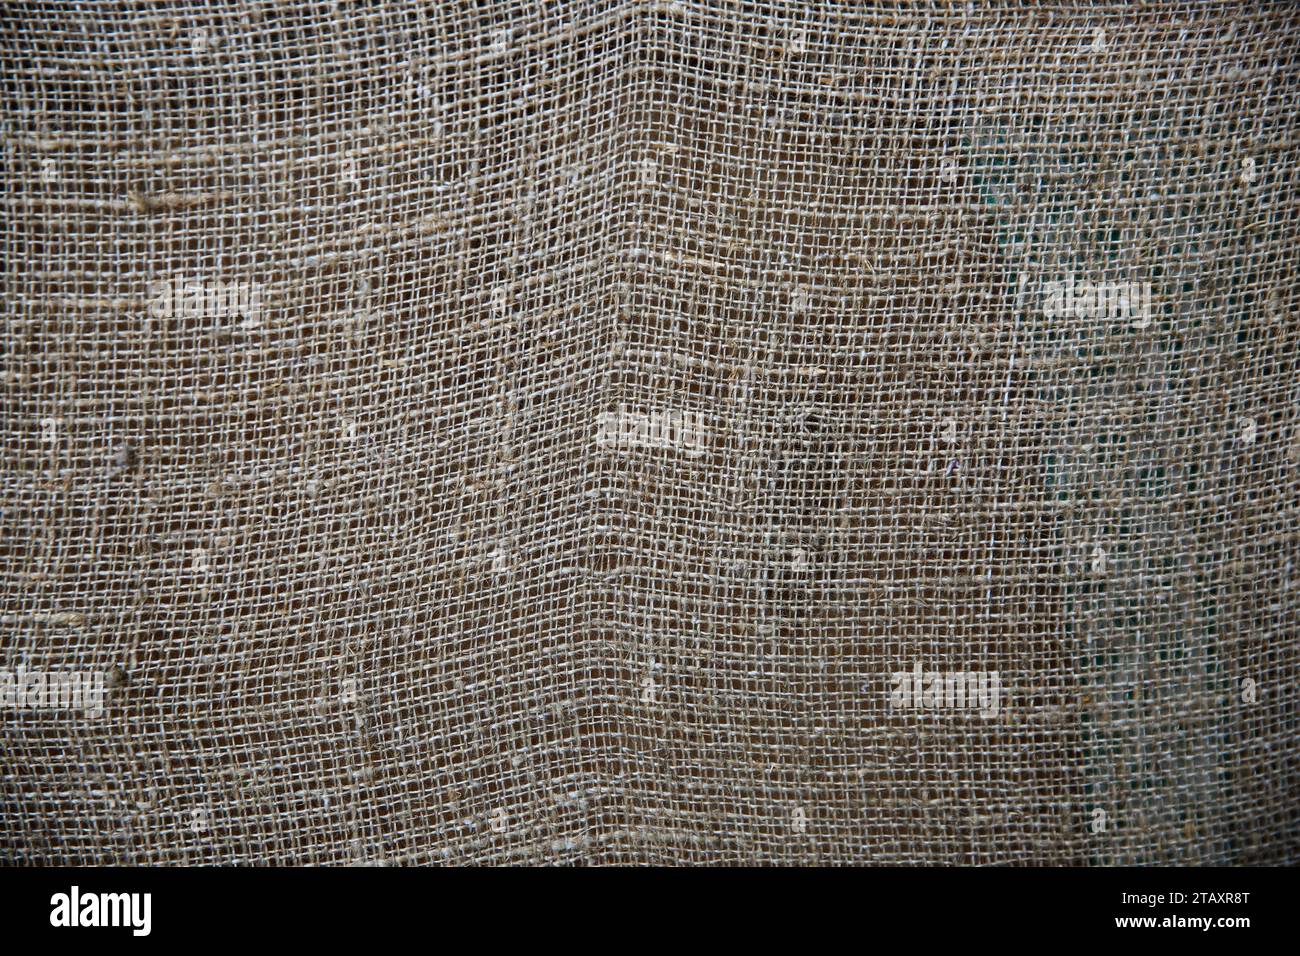 Fondo de textura de tela de arpillera o arpillera.